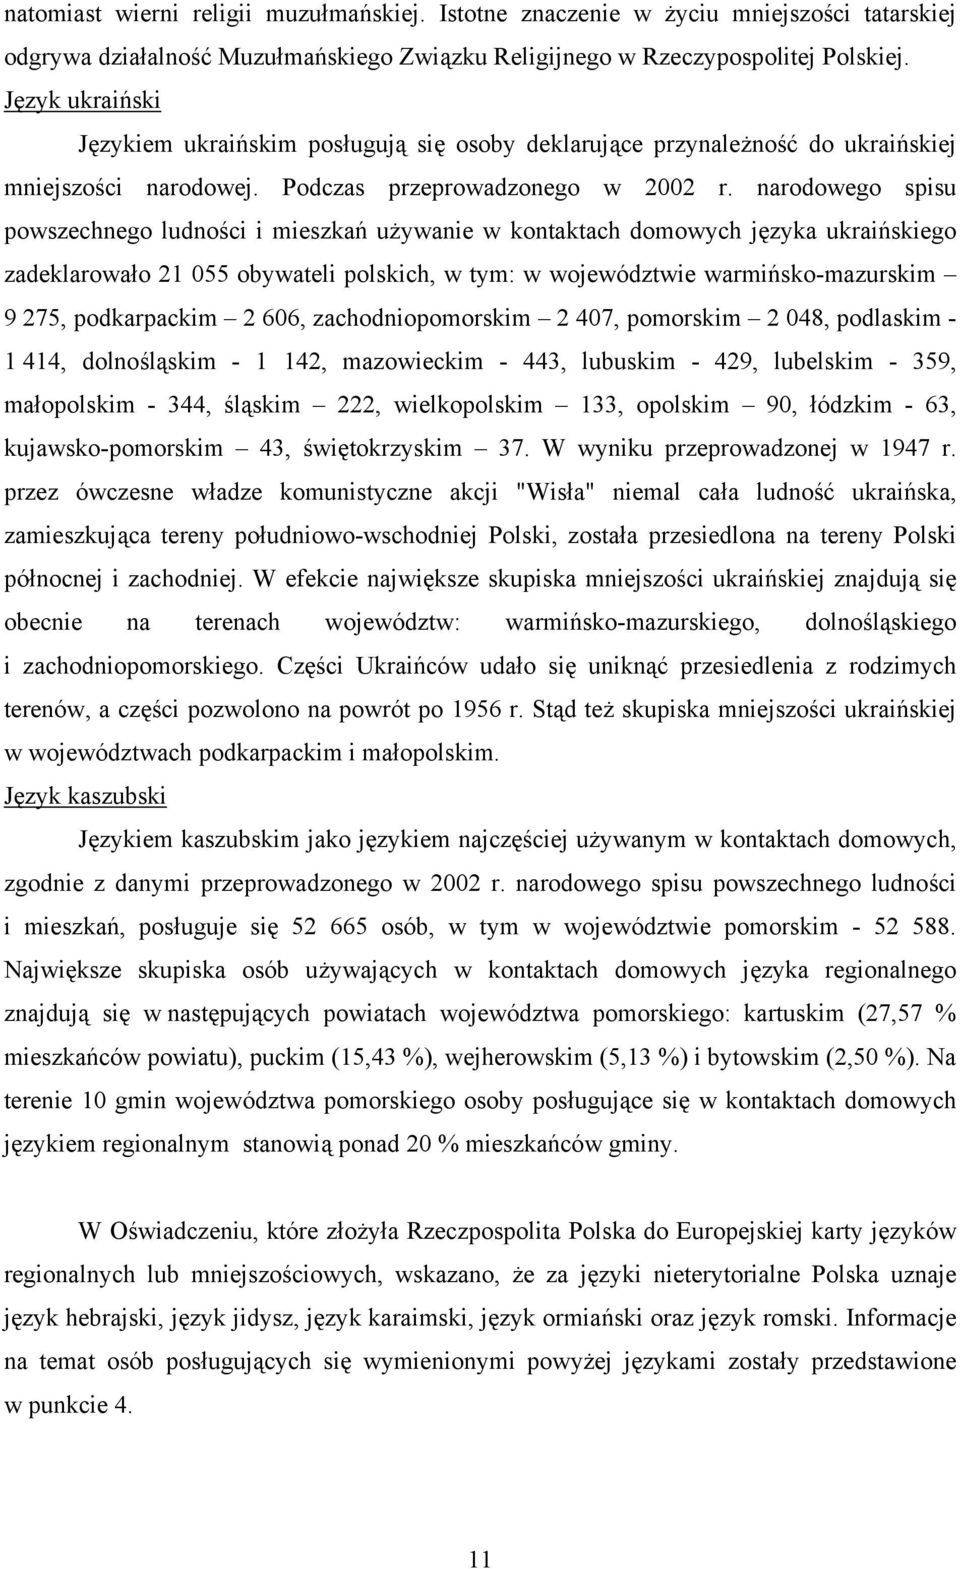 narodowego spisu powszechnego ludności i mieszkań używanie w kontaktach domowych języka ukraińskiego zadeklarowało 21 055 obywateli polskich, w tym: w województwie warmińsko-mazurskim 9 275,